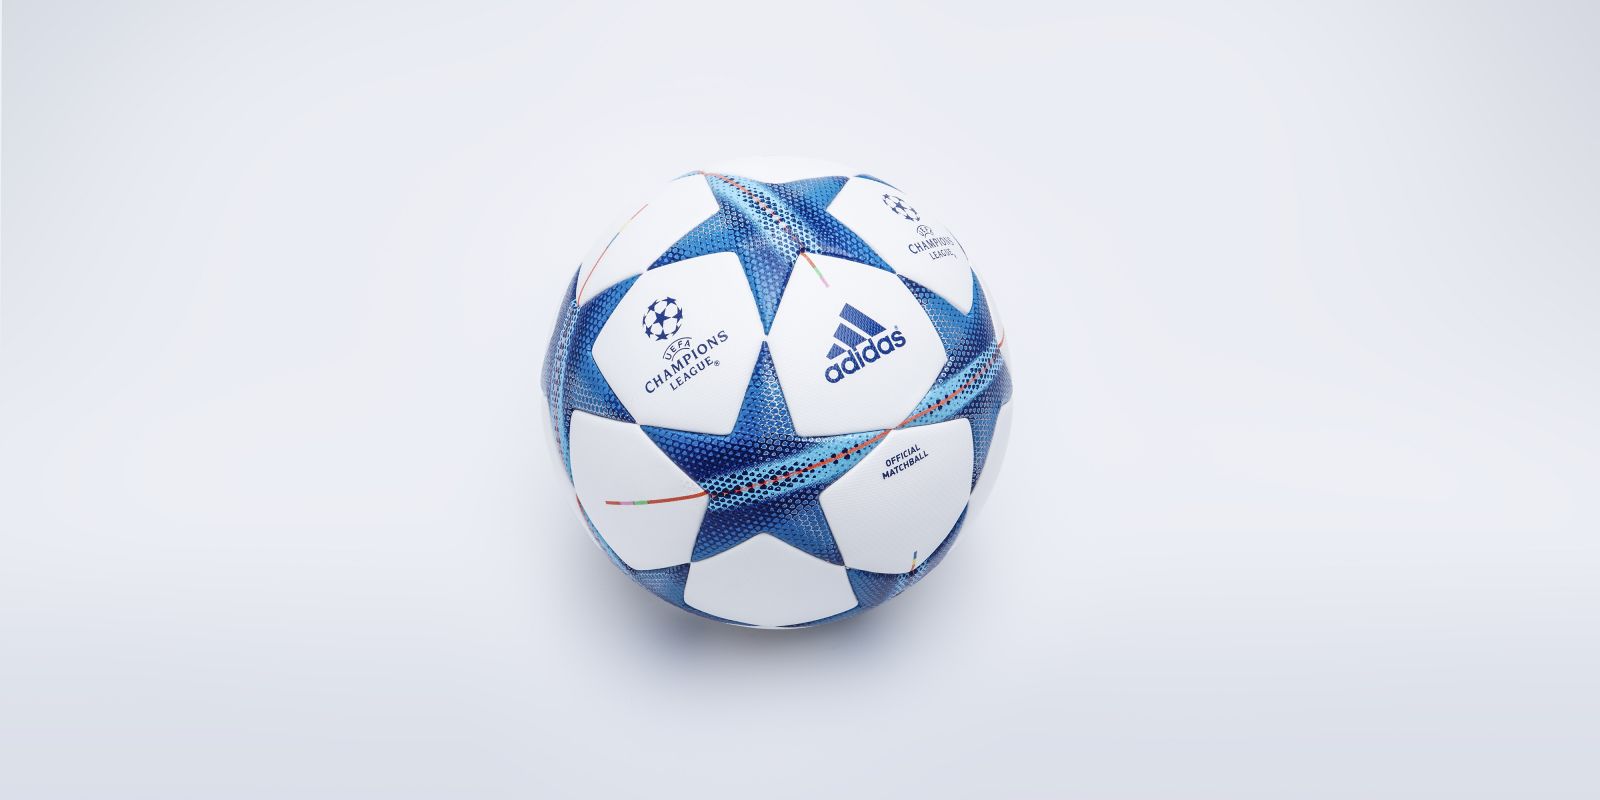 Сегодня будет презентован официальный мяч Лиги Чемпионов сезона-2015/16